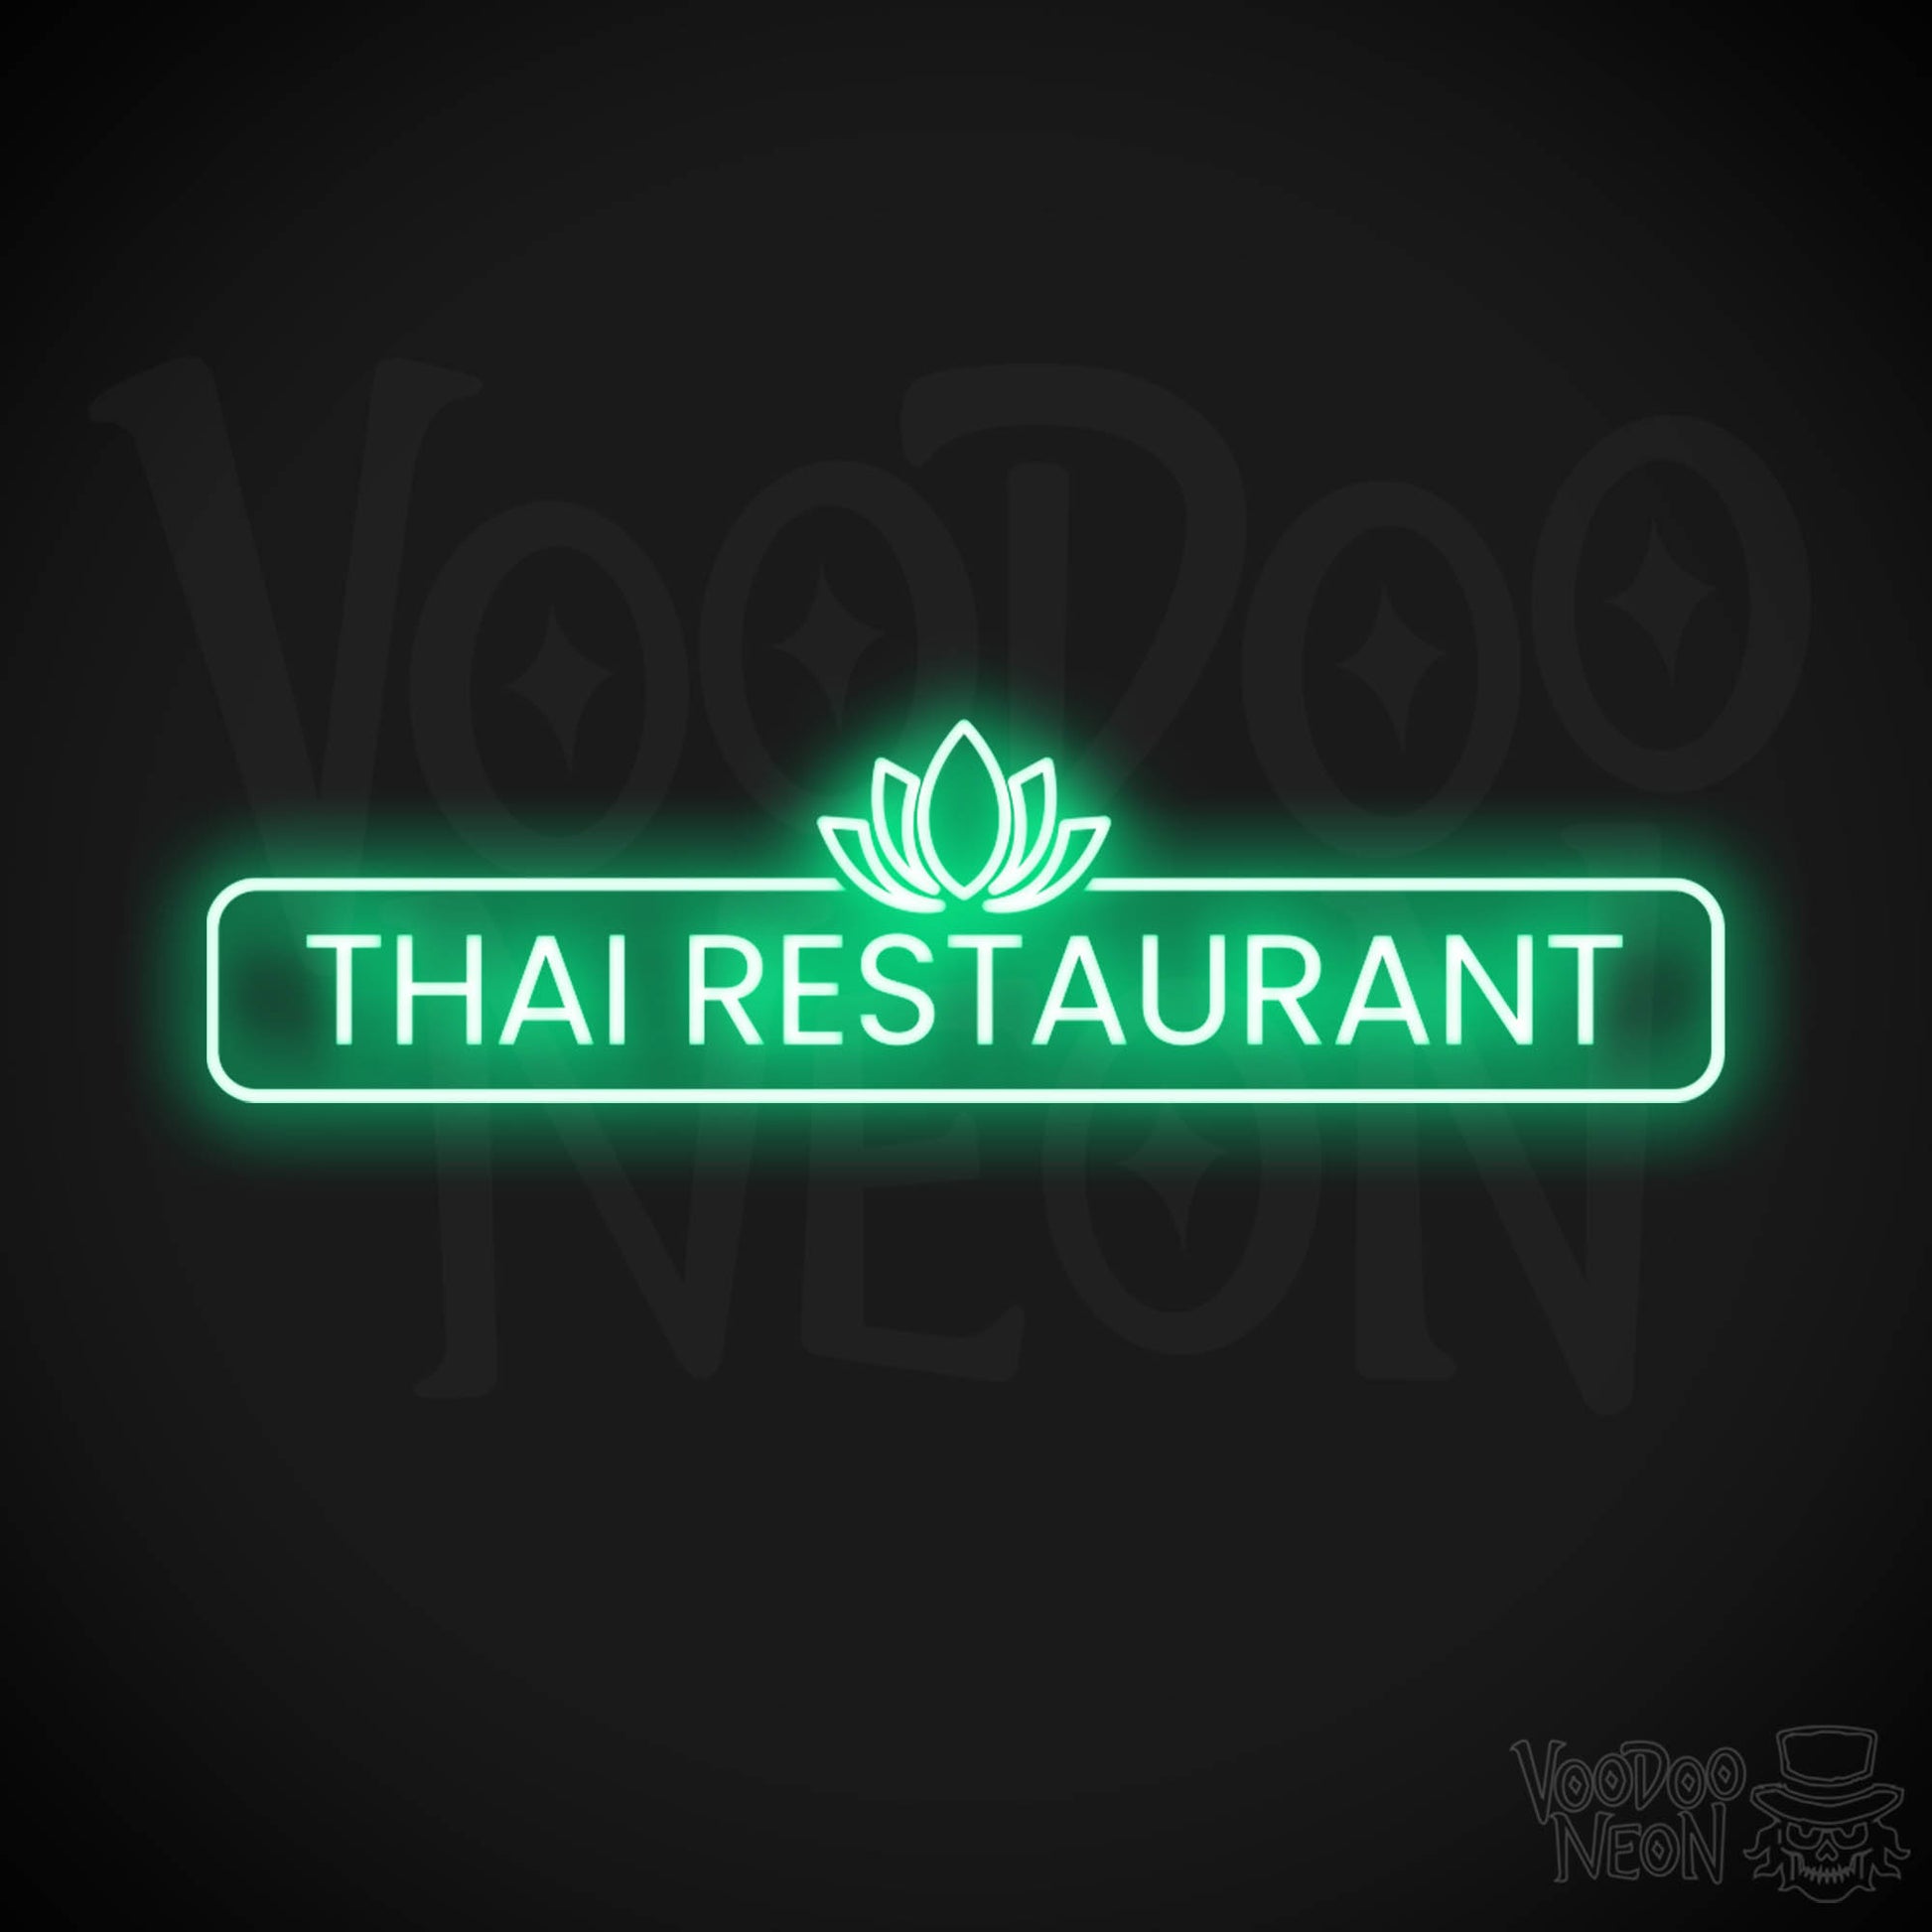 Thai Restaurant LED Neon - Green